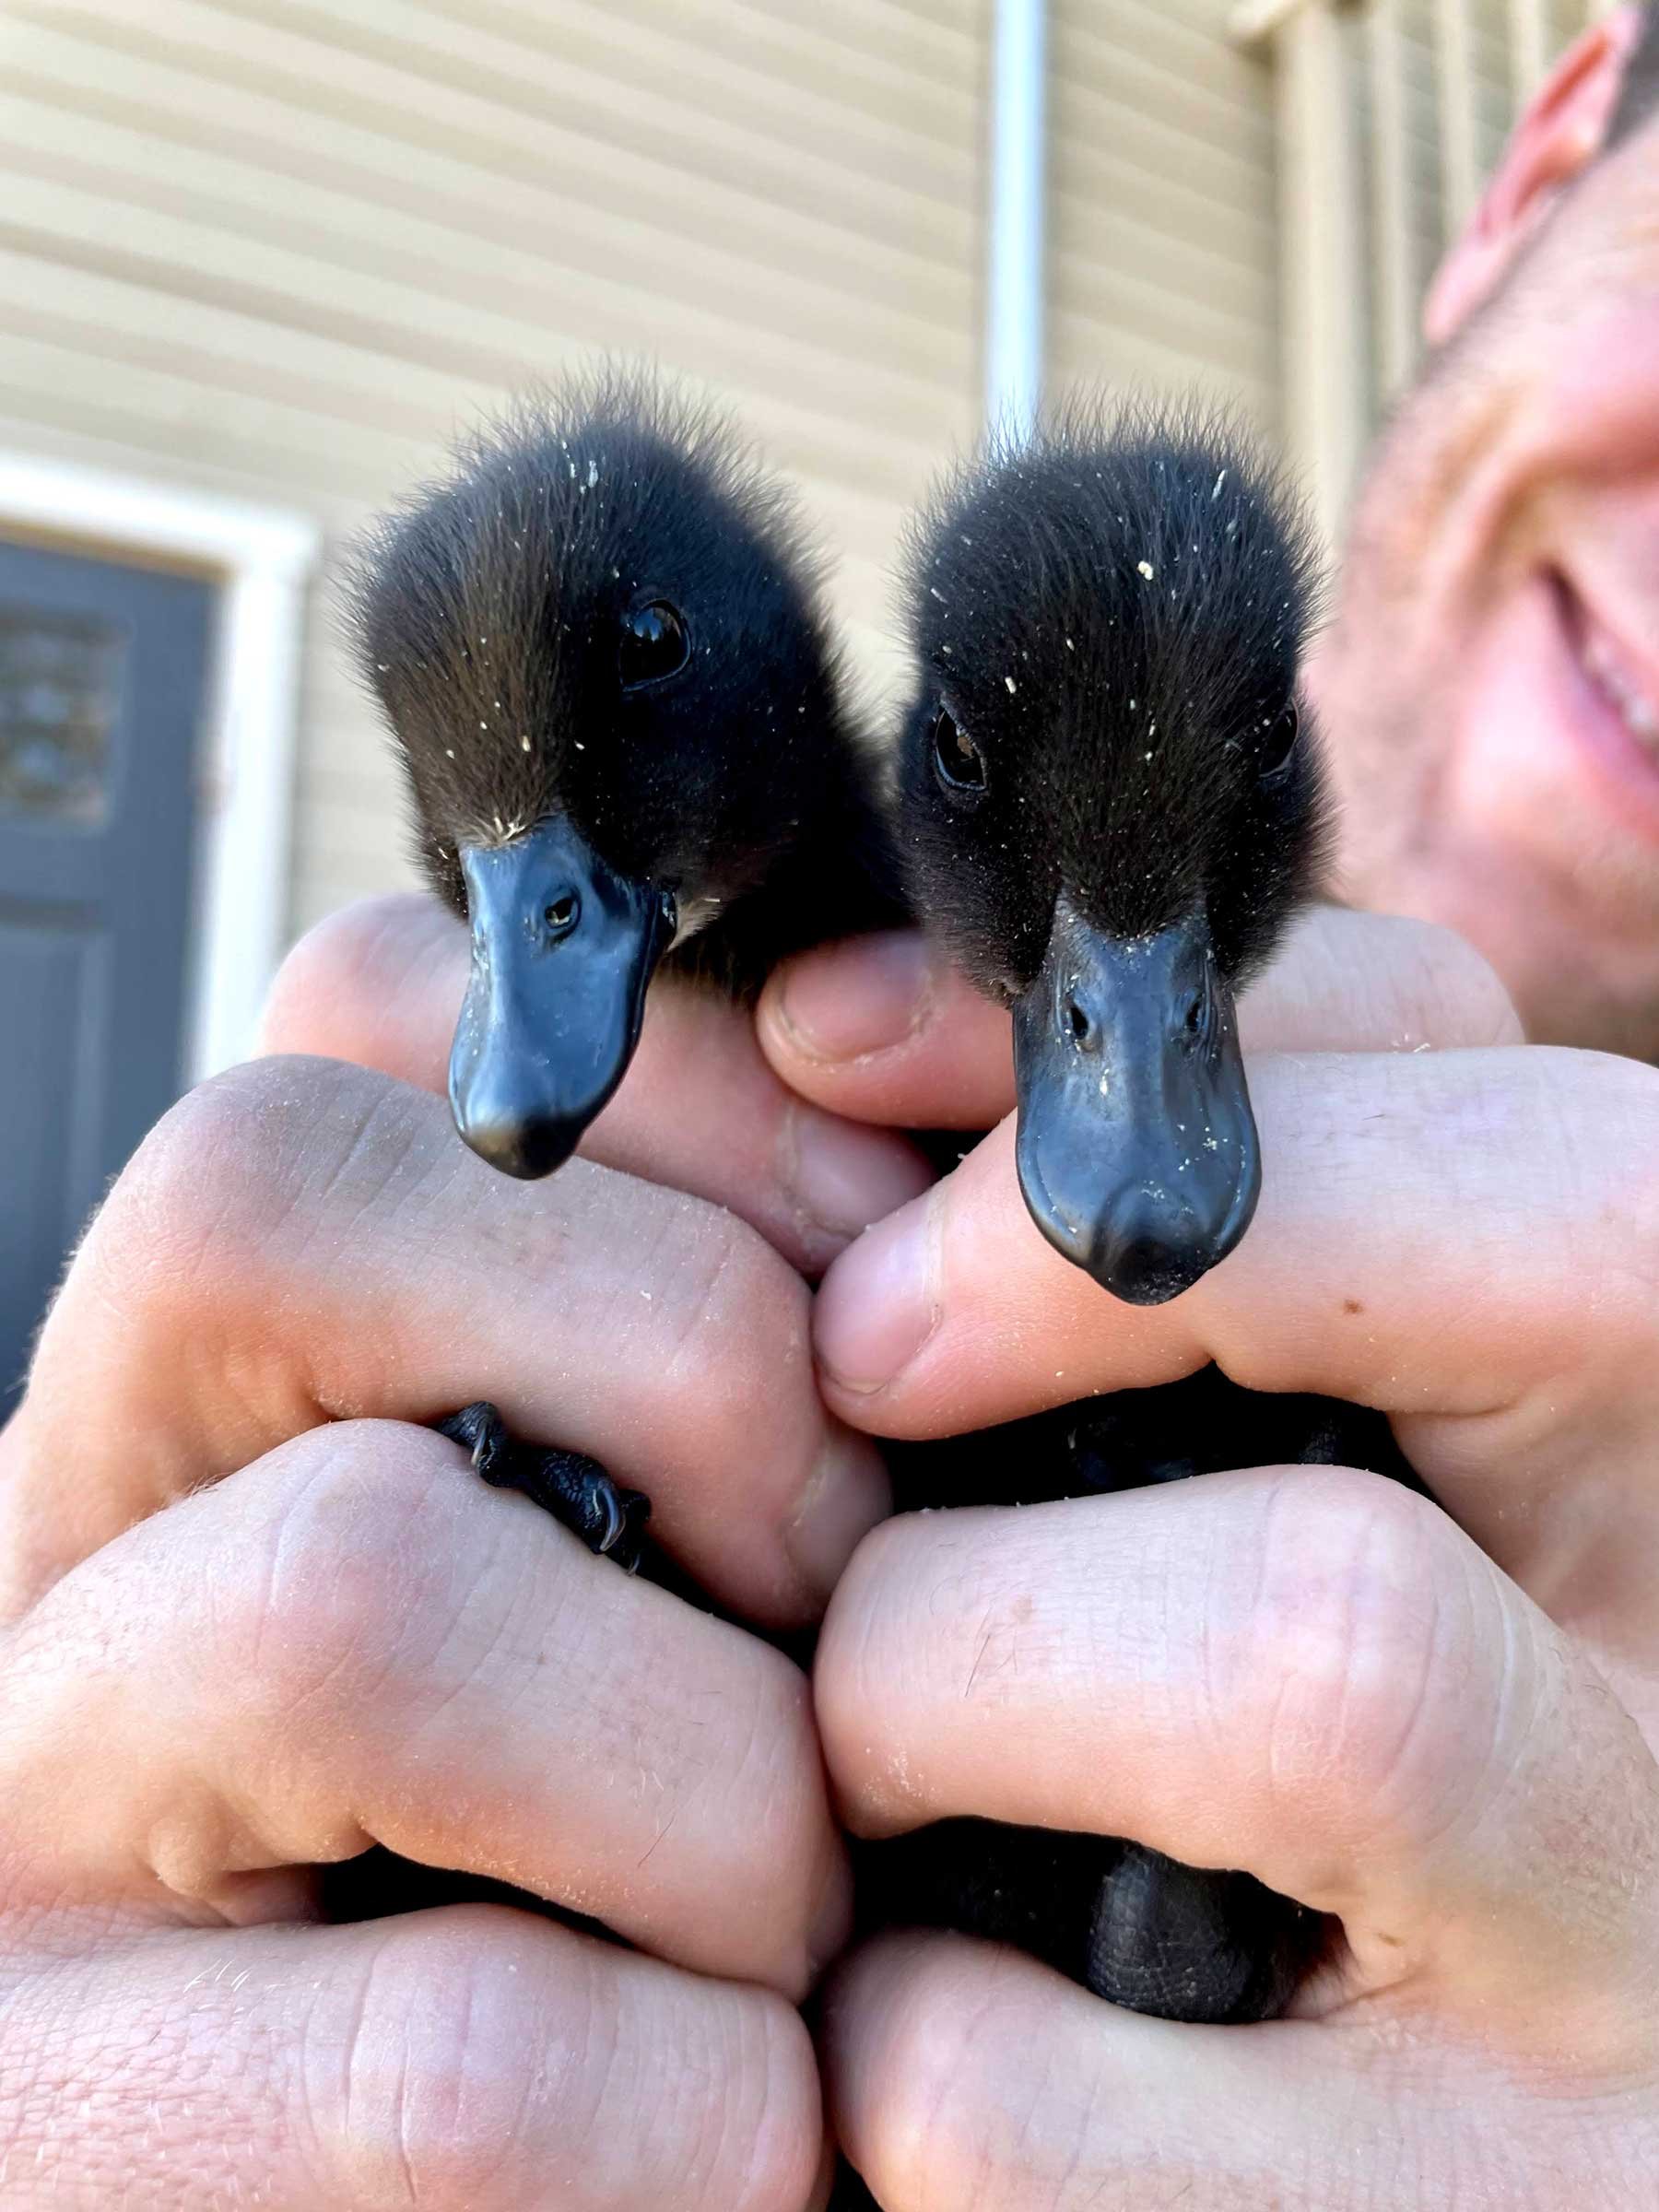 You guys! Baby ducks!!